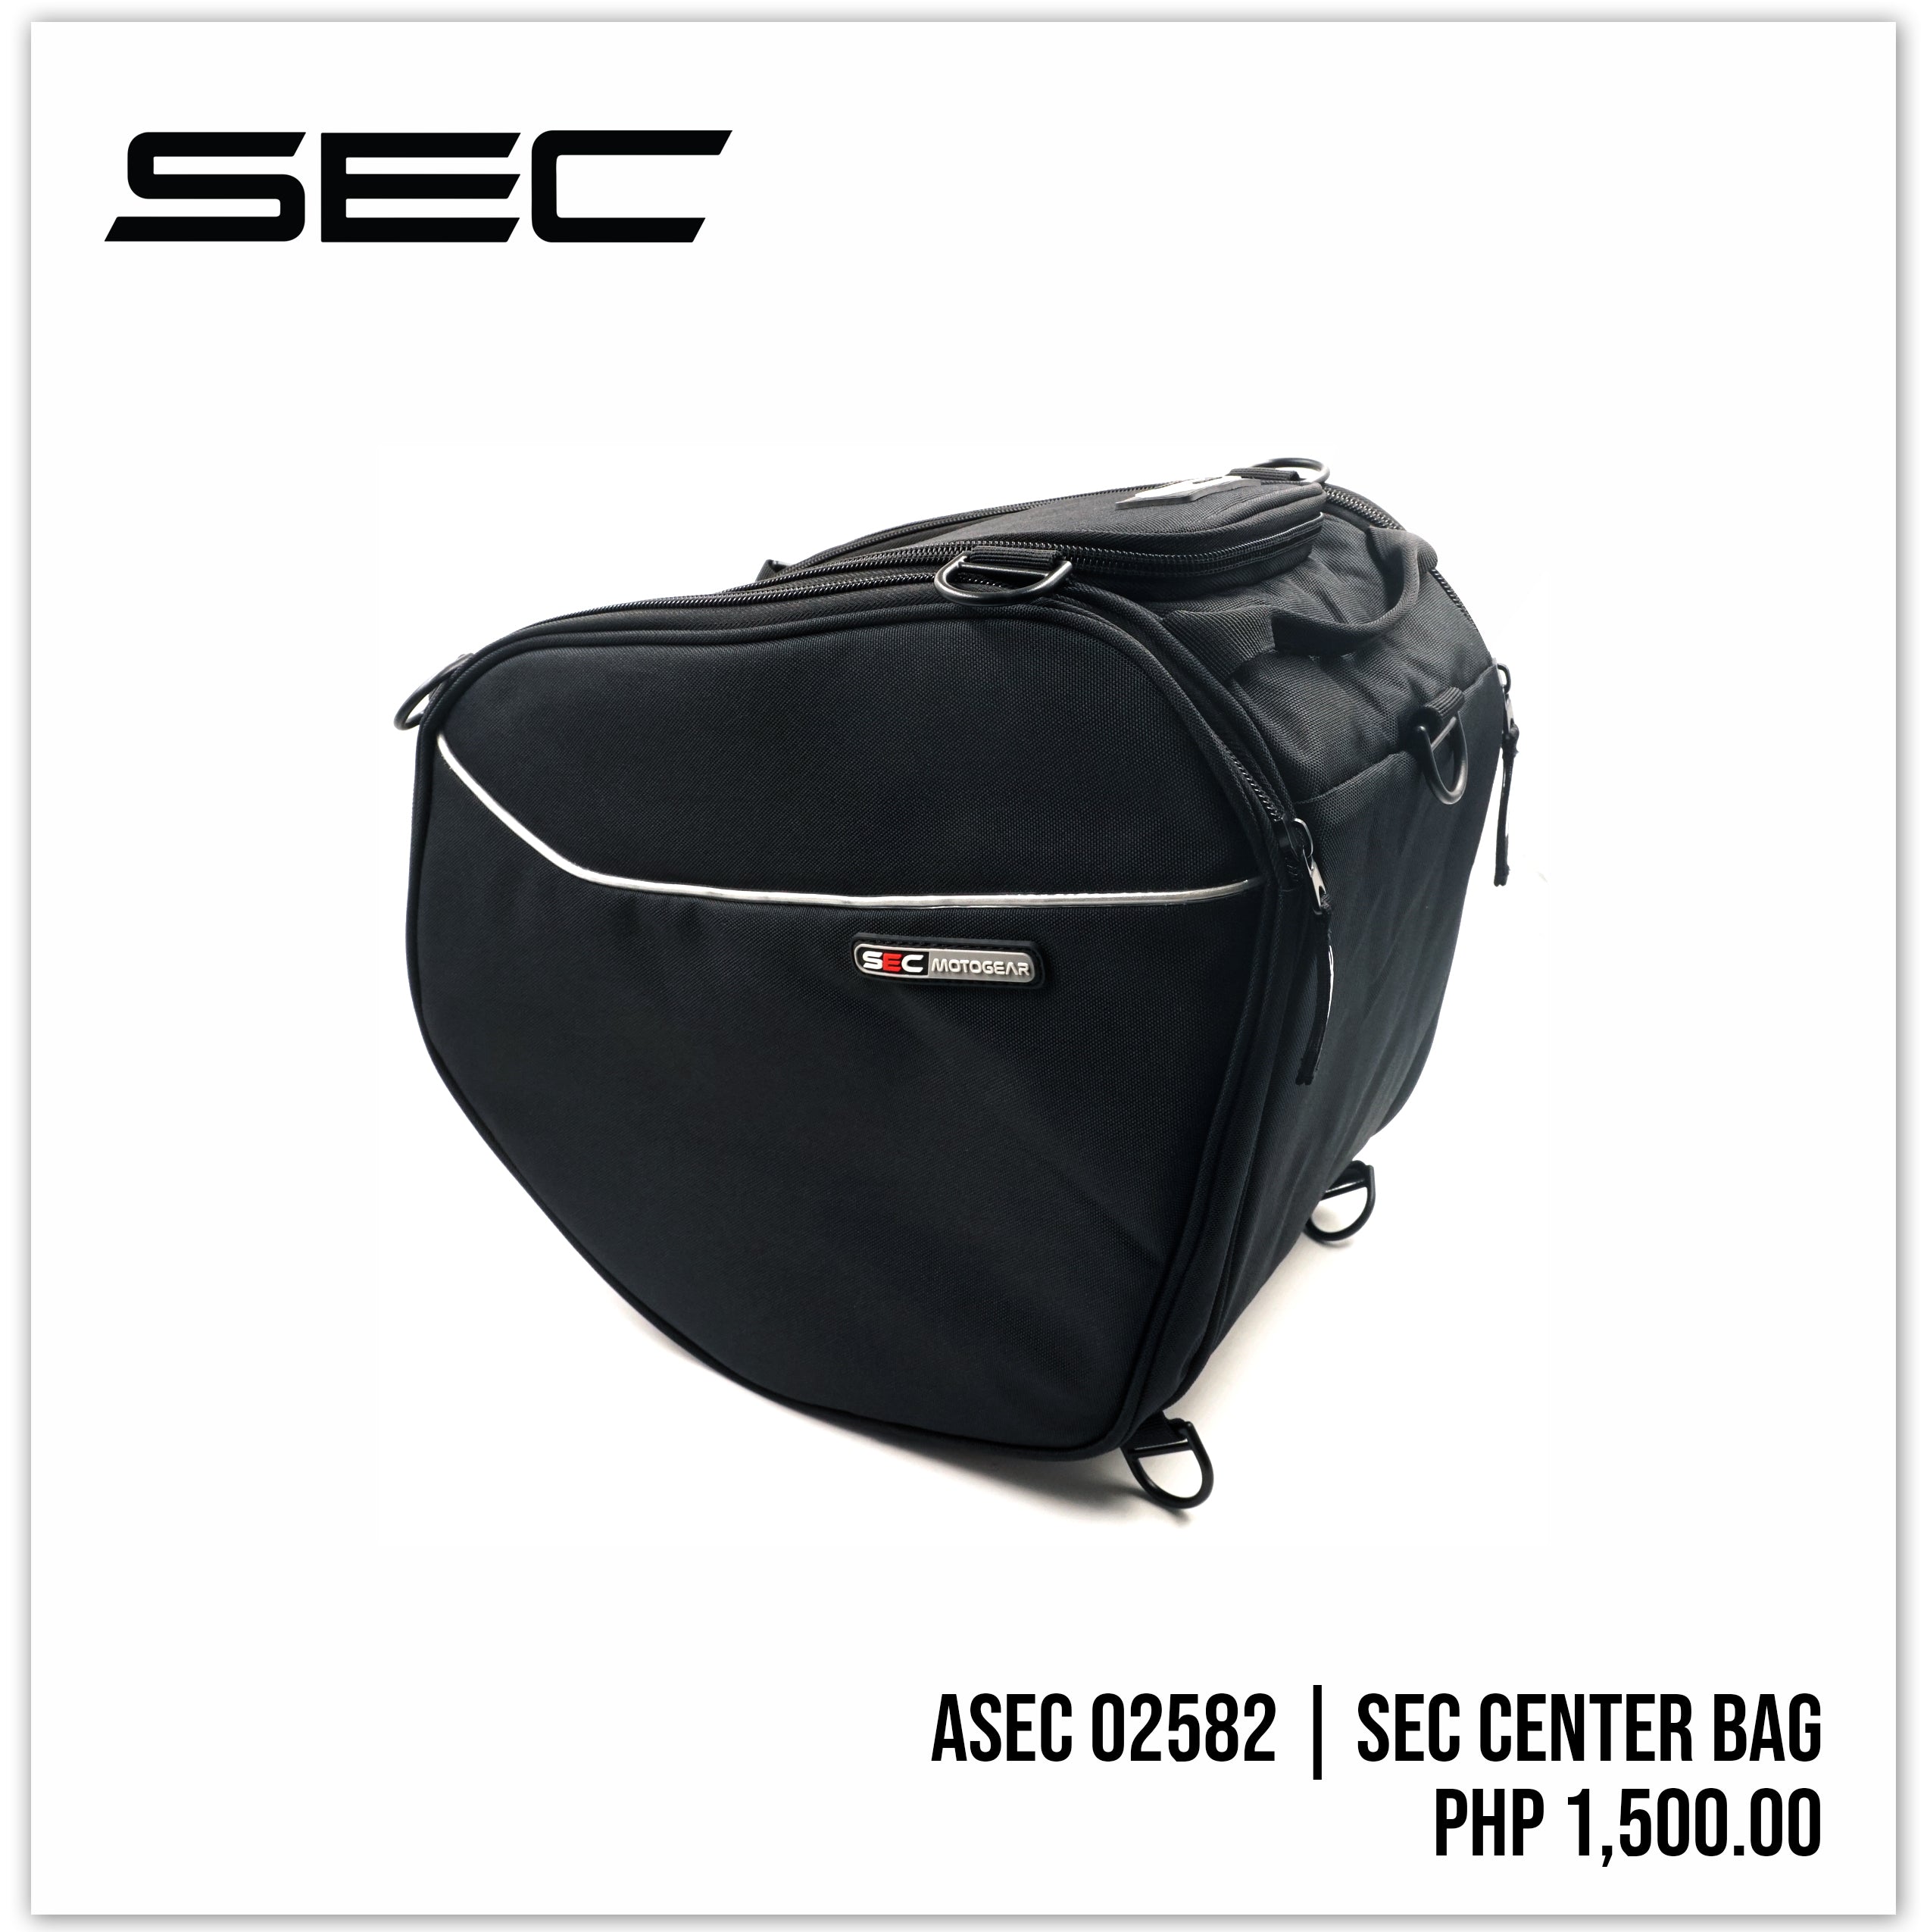 SEC Center Bag